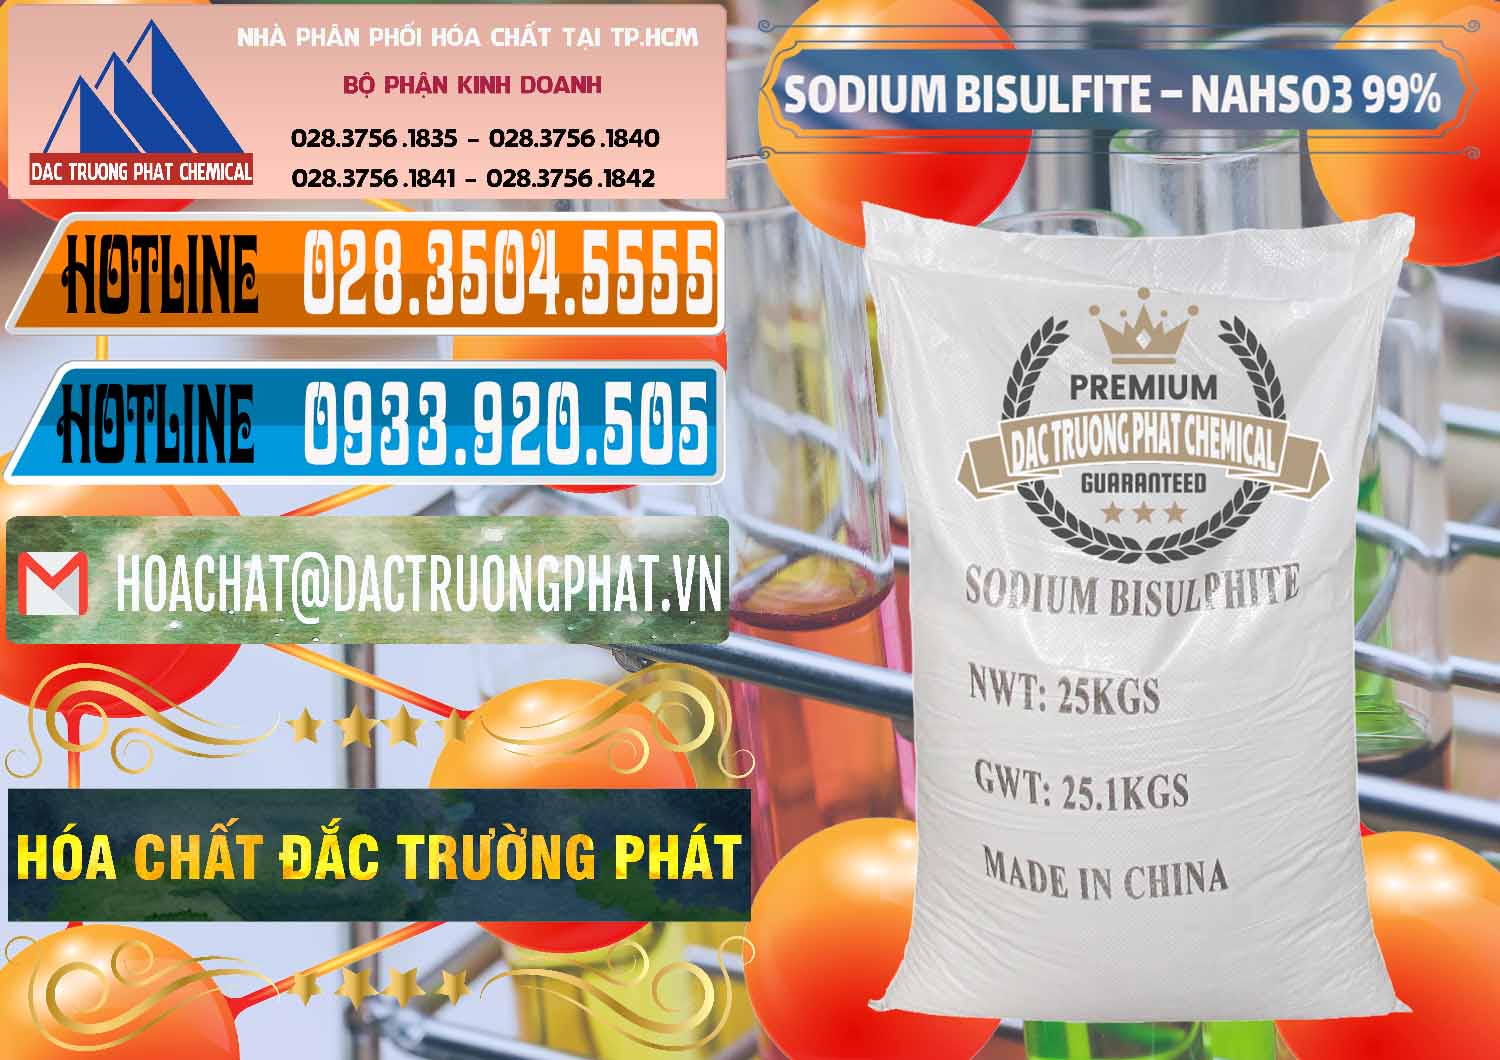 Cty bán và cung cấp Sodium Bisulfite – NAHSO3 Trung Quốc China - 0140 - Chuyên phân phối _ bán hóa chất tại TP.HCM - stmp.net